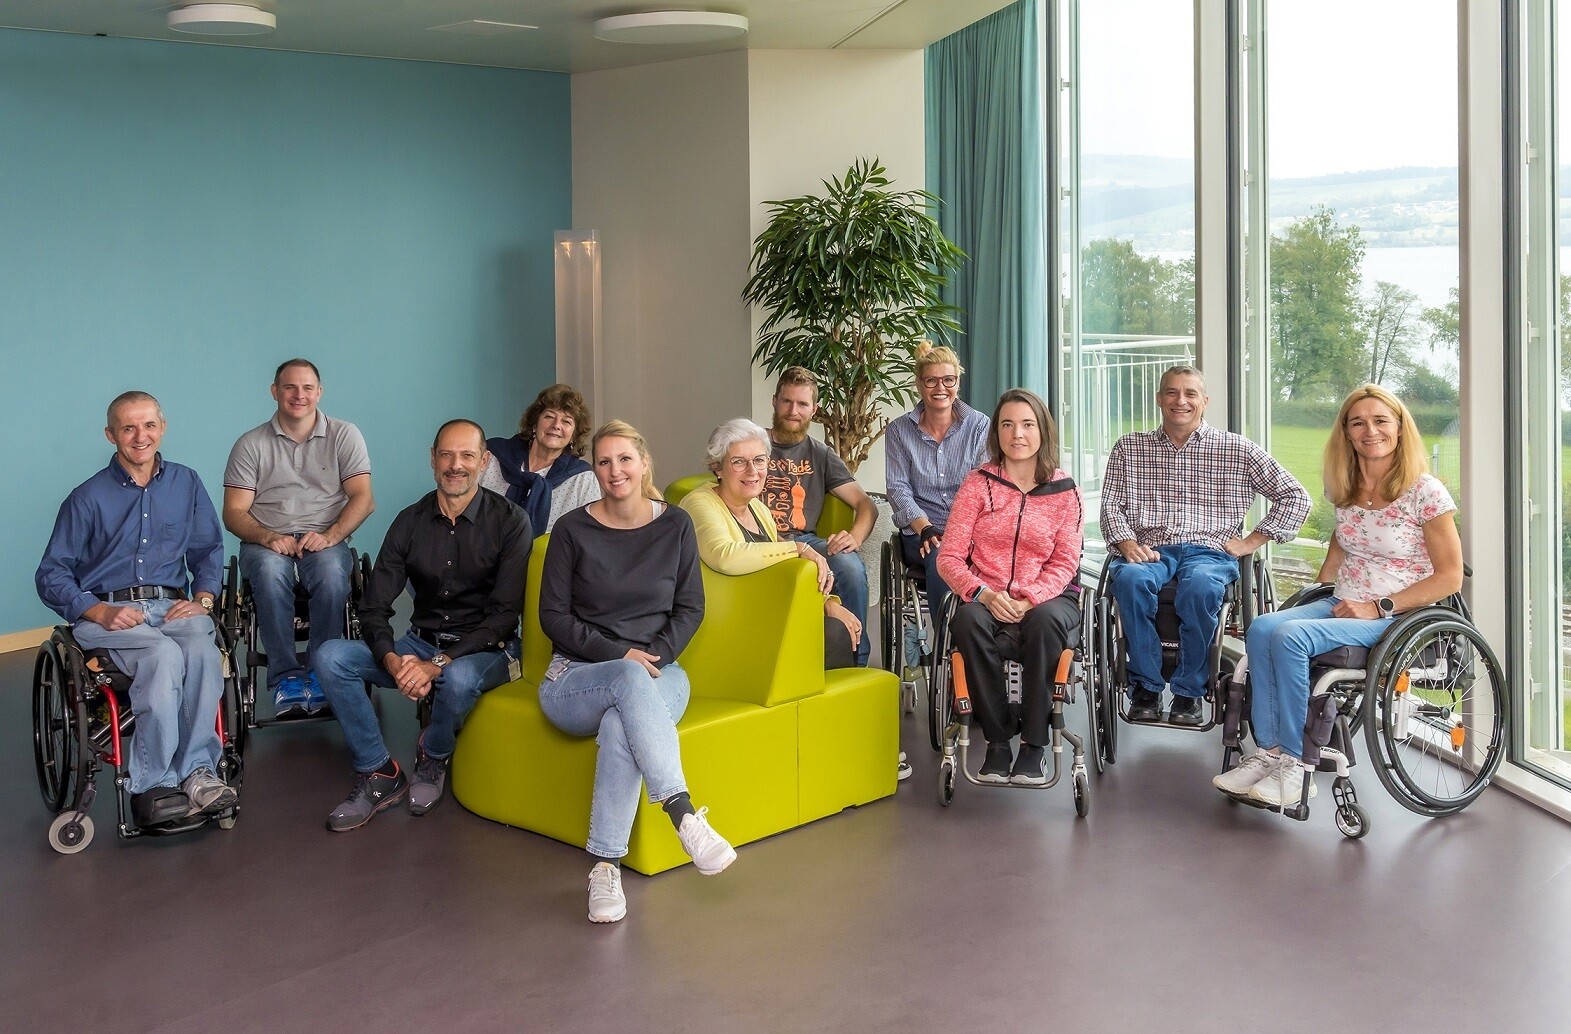 Im Peer Counselling-Team des SPZ arbeiten Menschen mit unterschiedlichen Behinderungen und Erfahrungen, darunter auch Angehörige von Menschen mit Querschnittlähmung. Das Gruppenbild zeigt das elfköpfige Team der Peers.